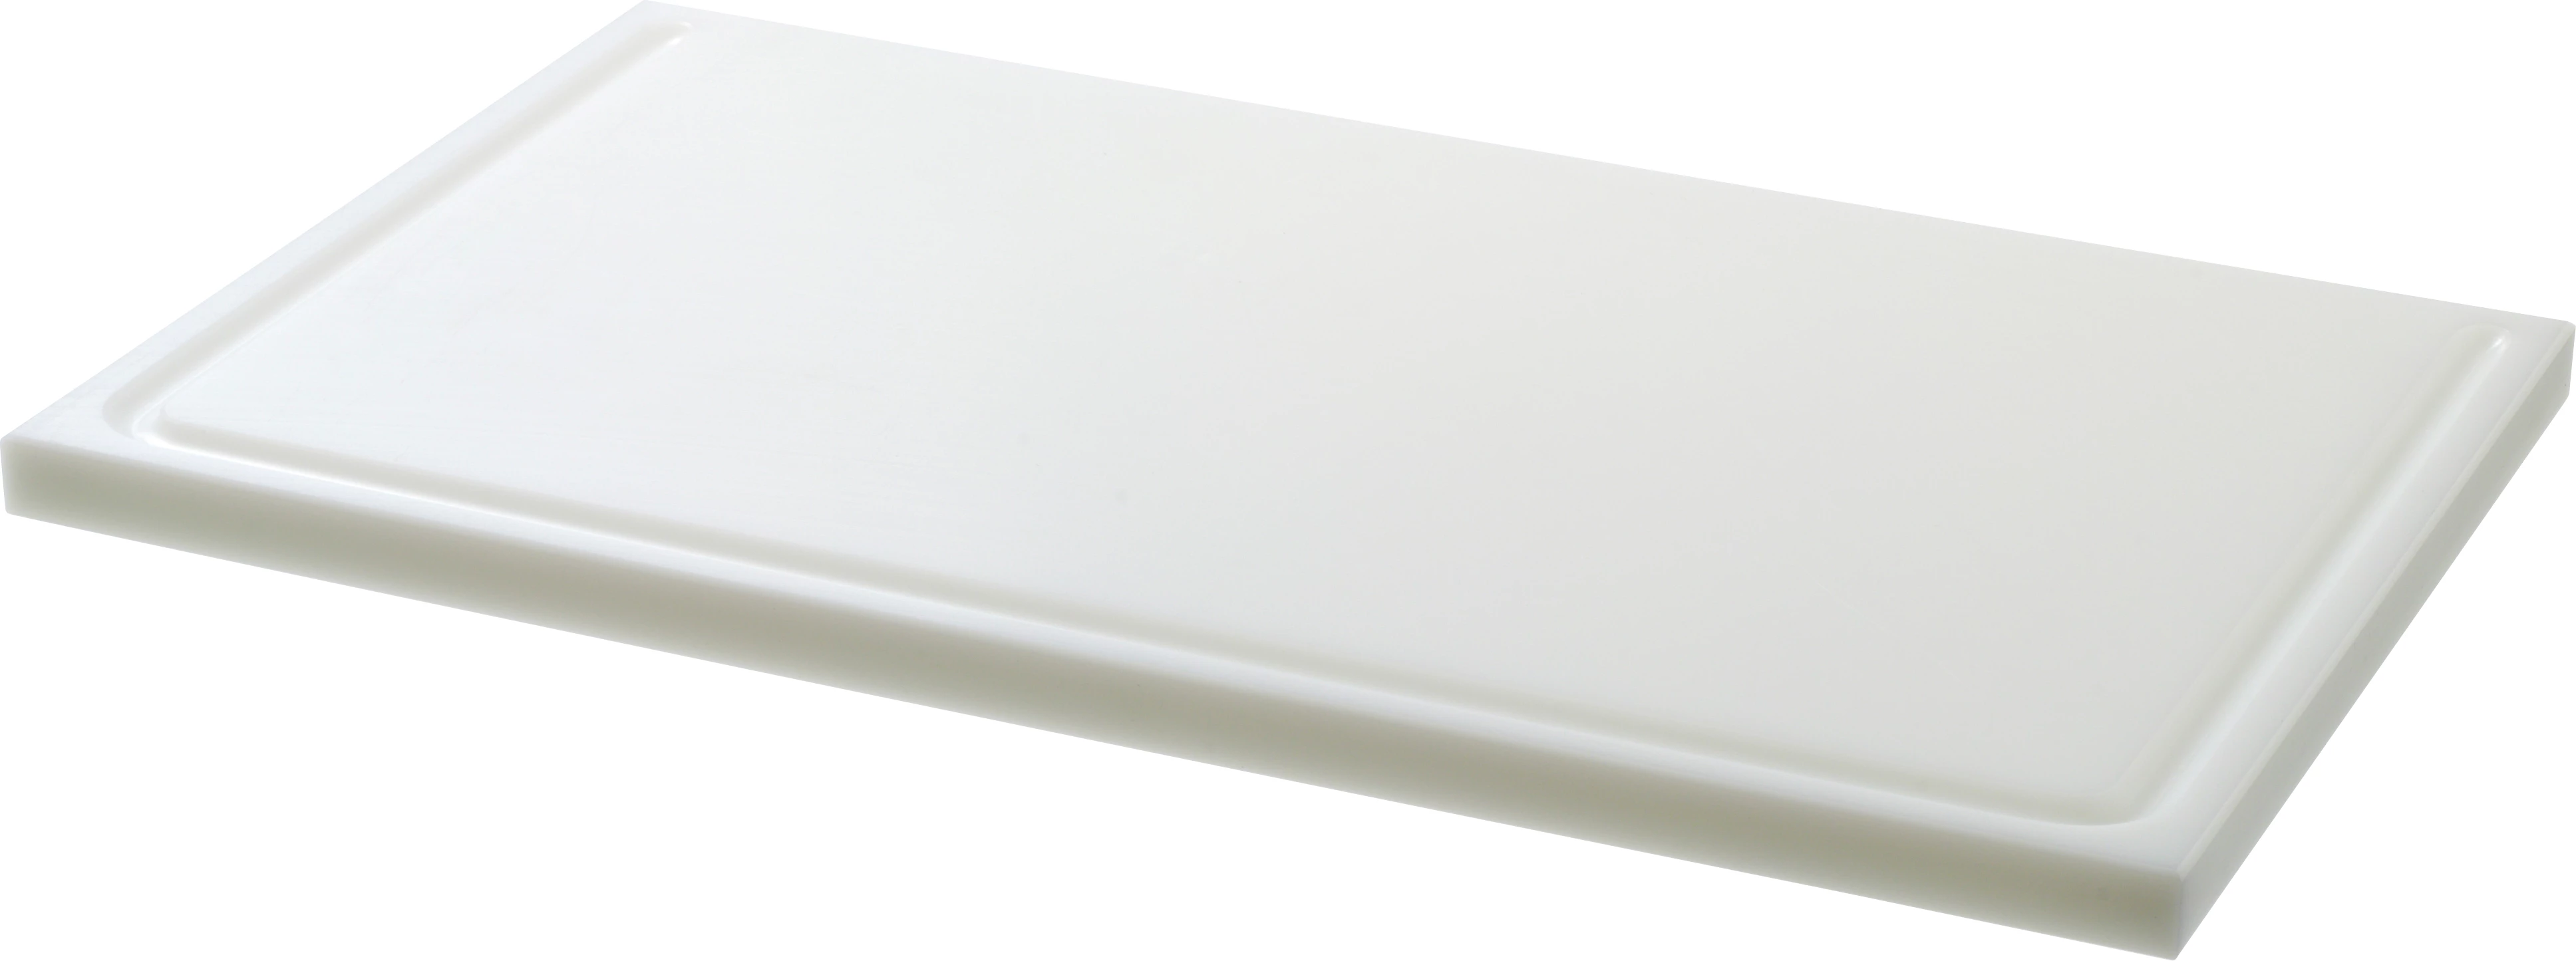 Euroboard skæreplanke, hvid, 40 x 25 x 2 cm